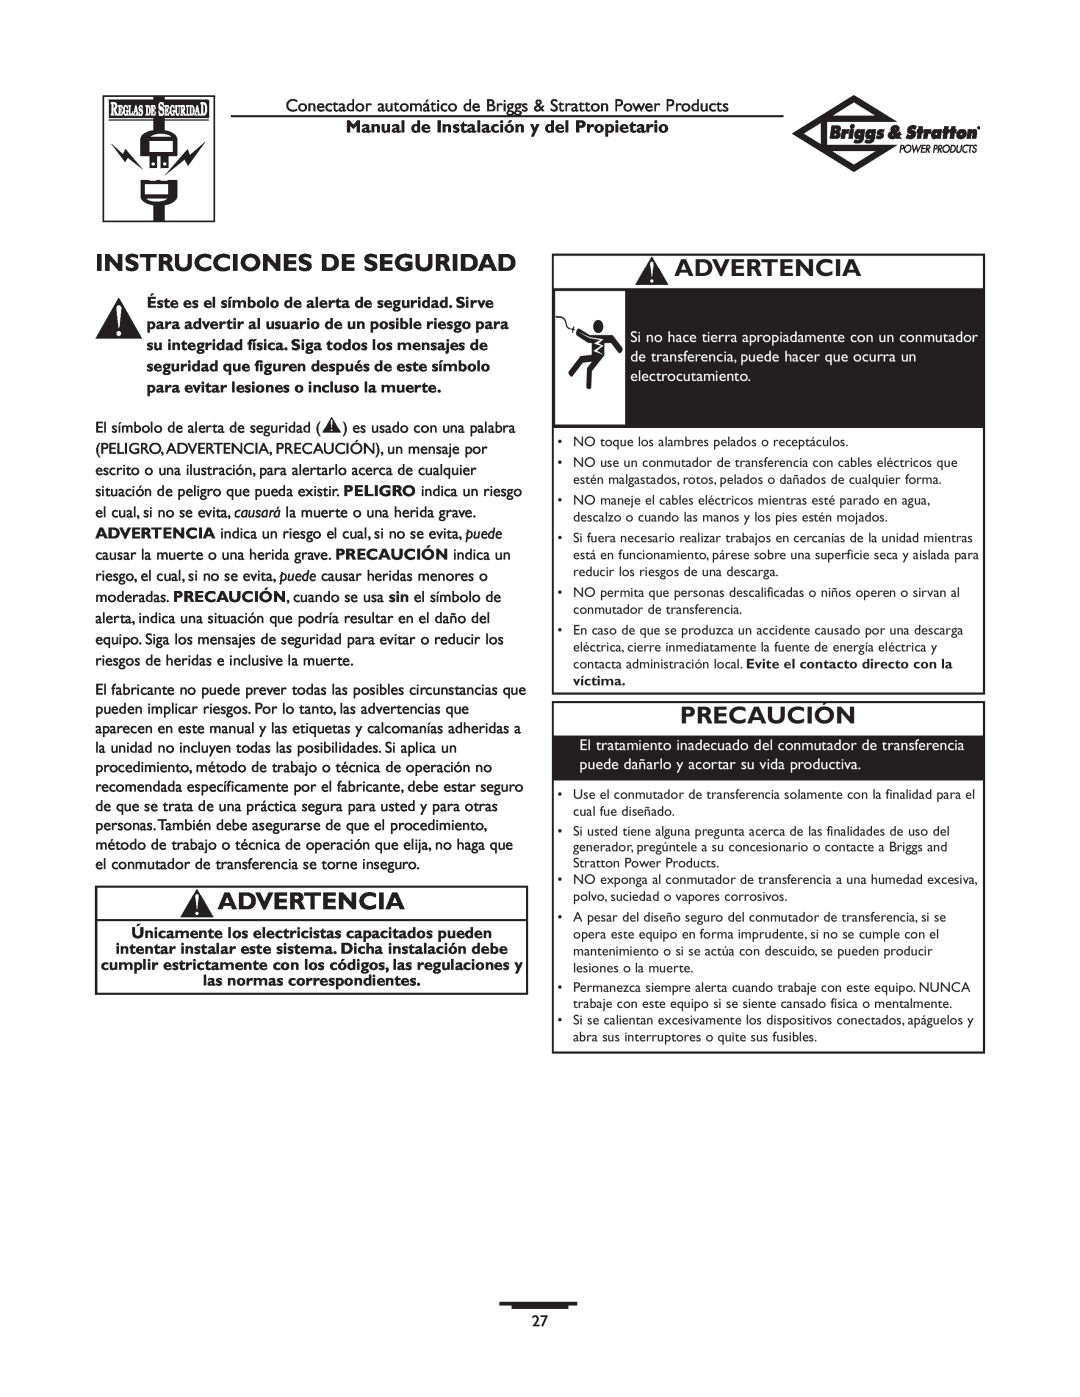 Briggs & Stratton 01813-0 Instrucciones De Seguridad, Advertencia, Precaución, Manual de Instalación y del Propietario 